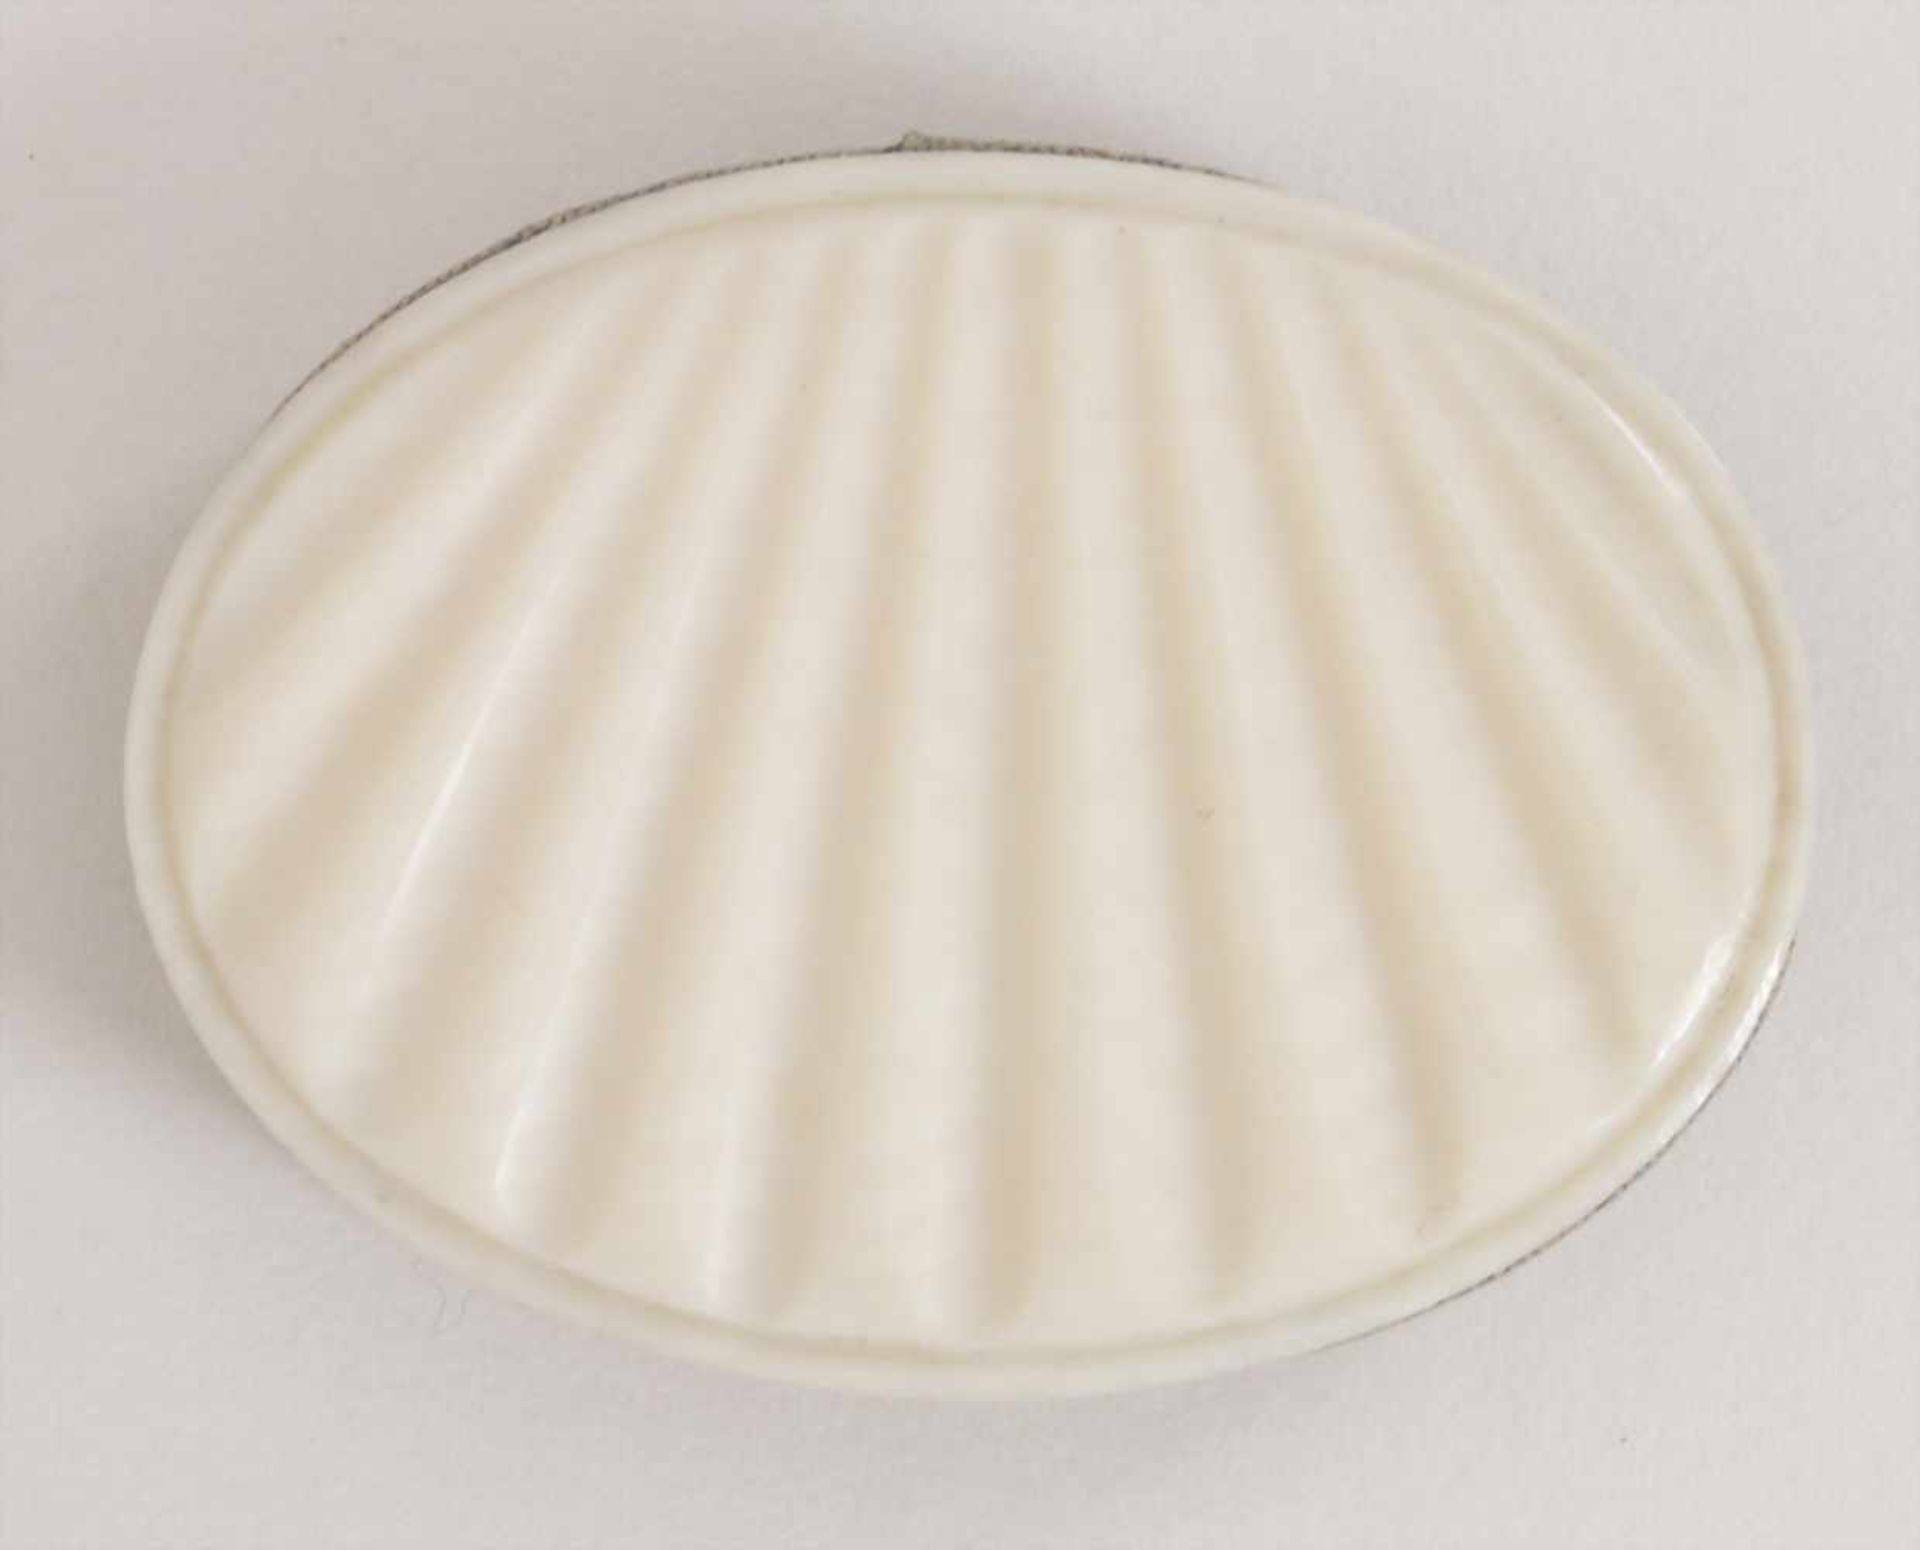 Elfenbein Nadelkissen / An ivory pincushion, 19. Jh.Material: muschelförmige Elfenbeinplatten, Maße: - Image 2 of 3